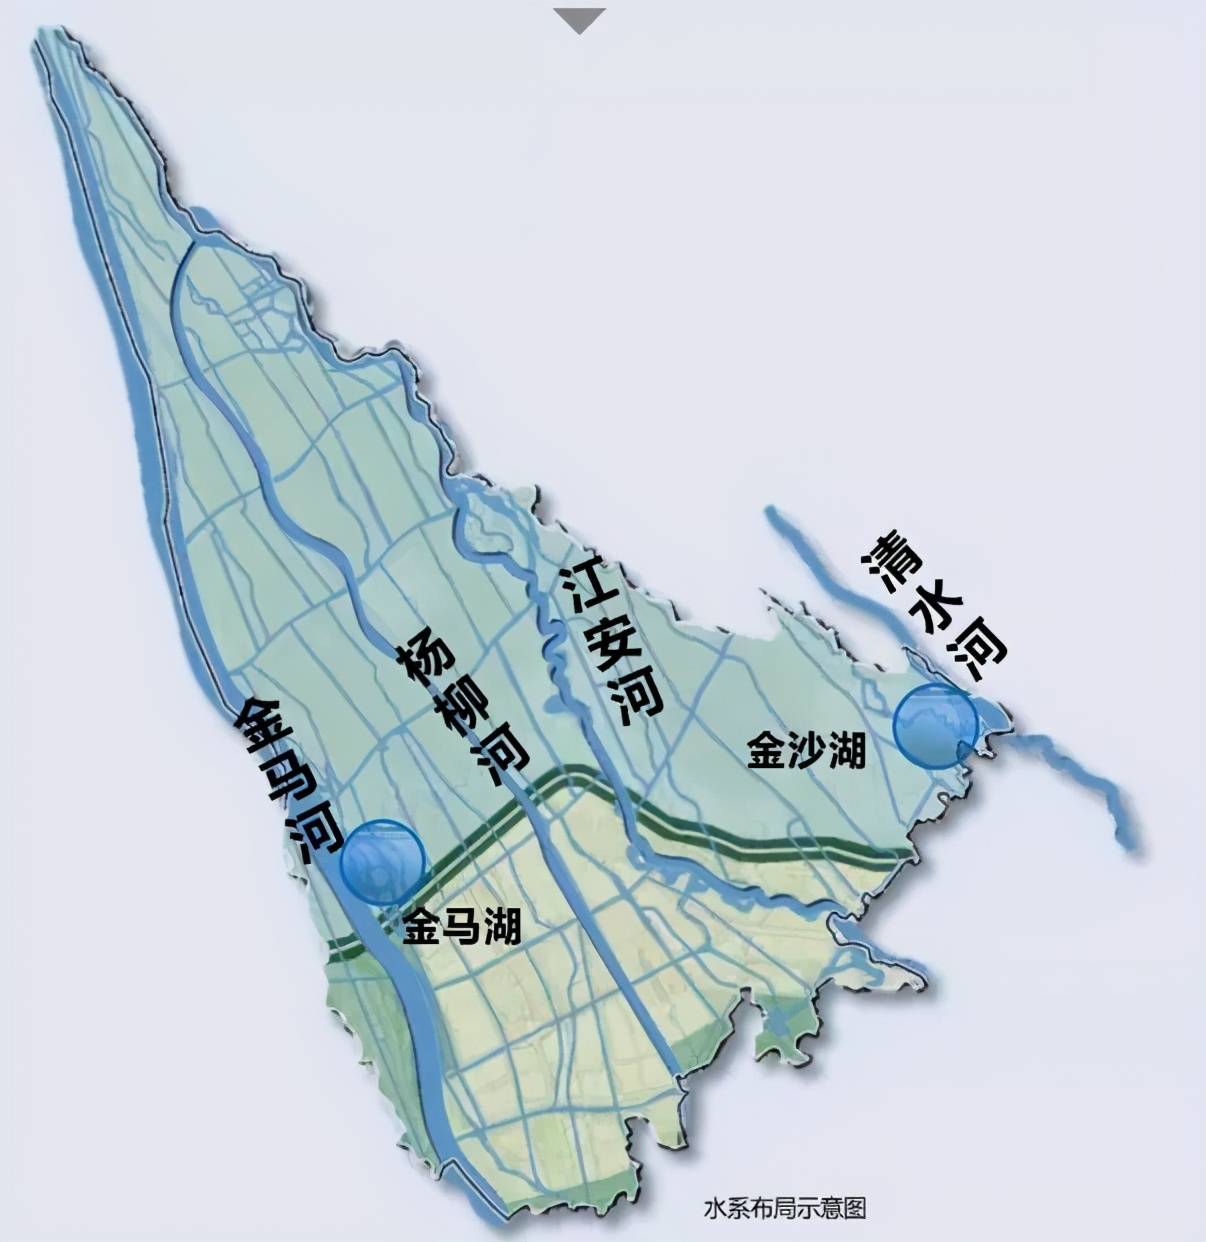 从西到东分别是金马河,杨柳河,江安河,清水河,于是,温江围绕这4条河流